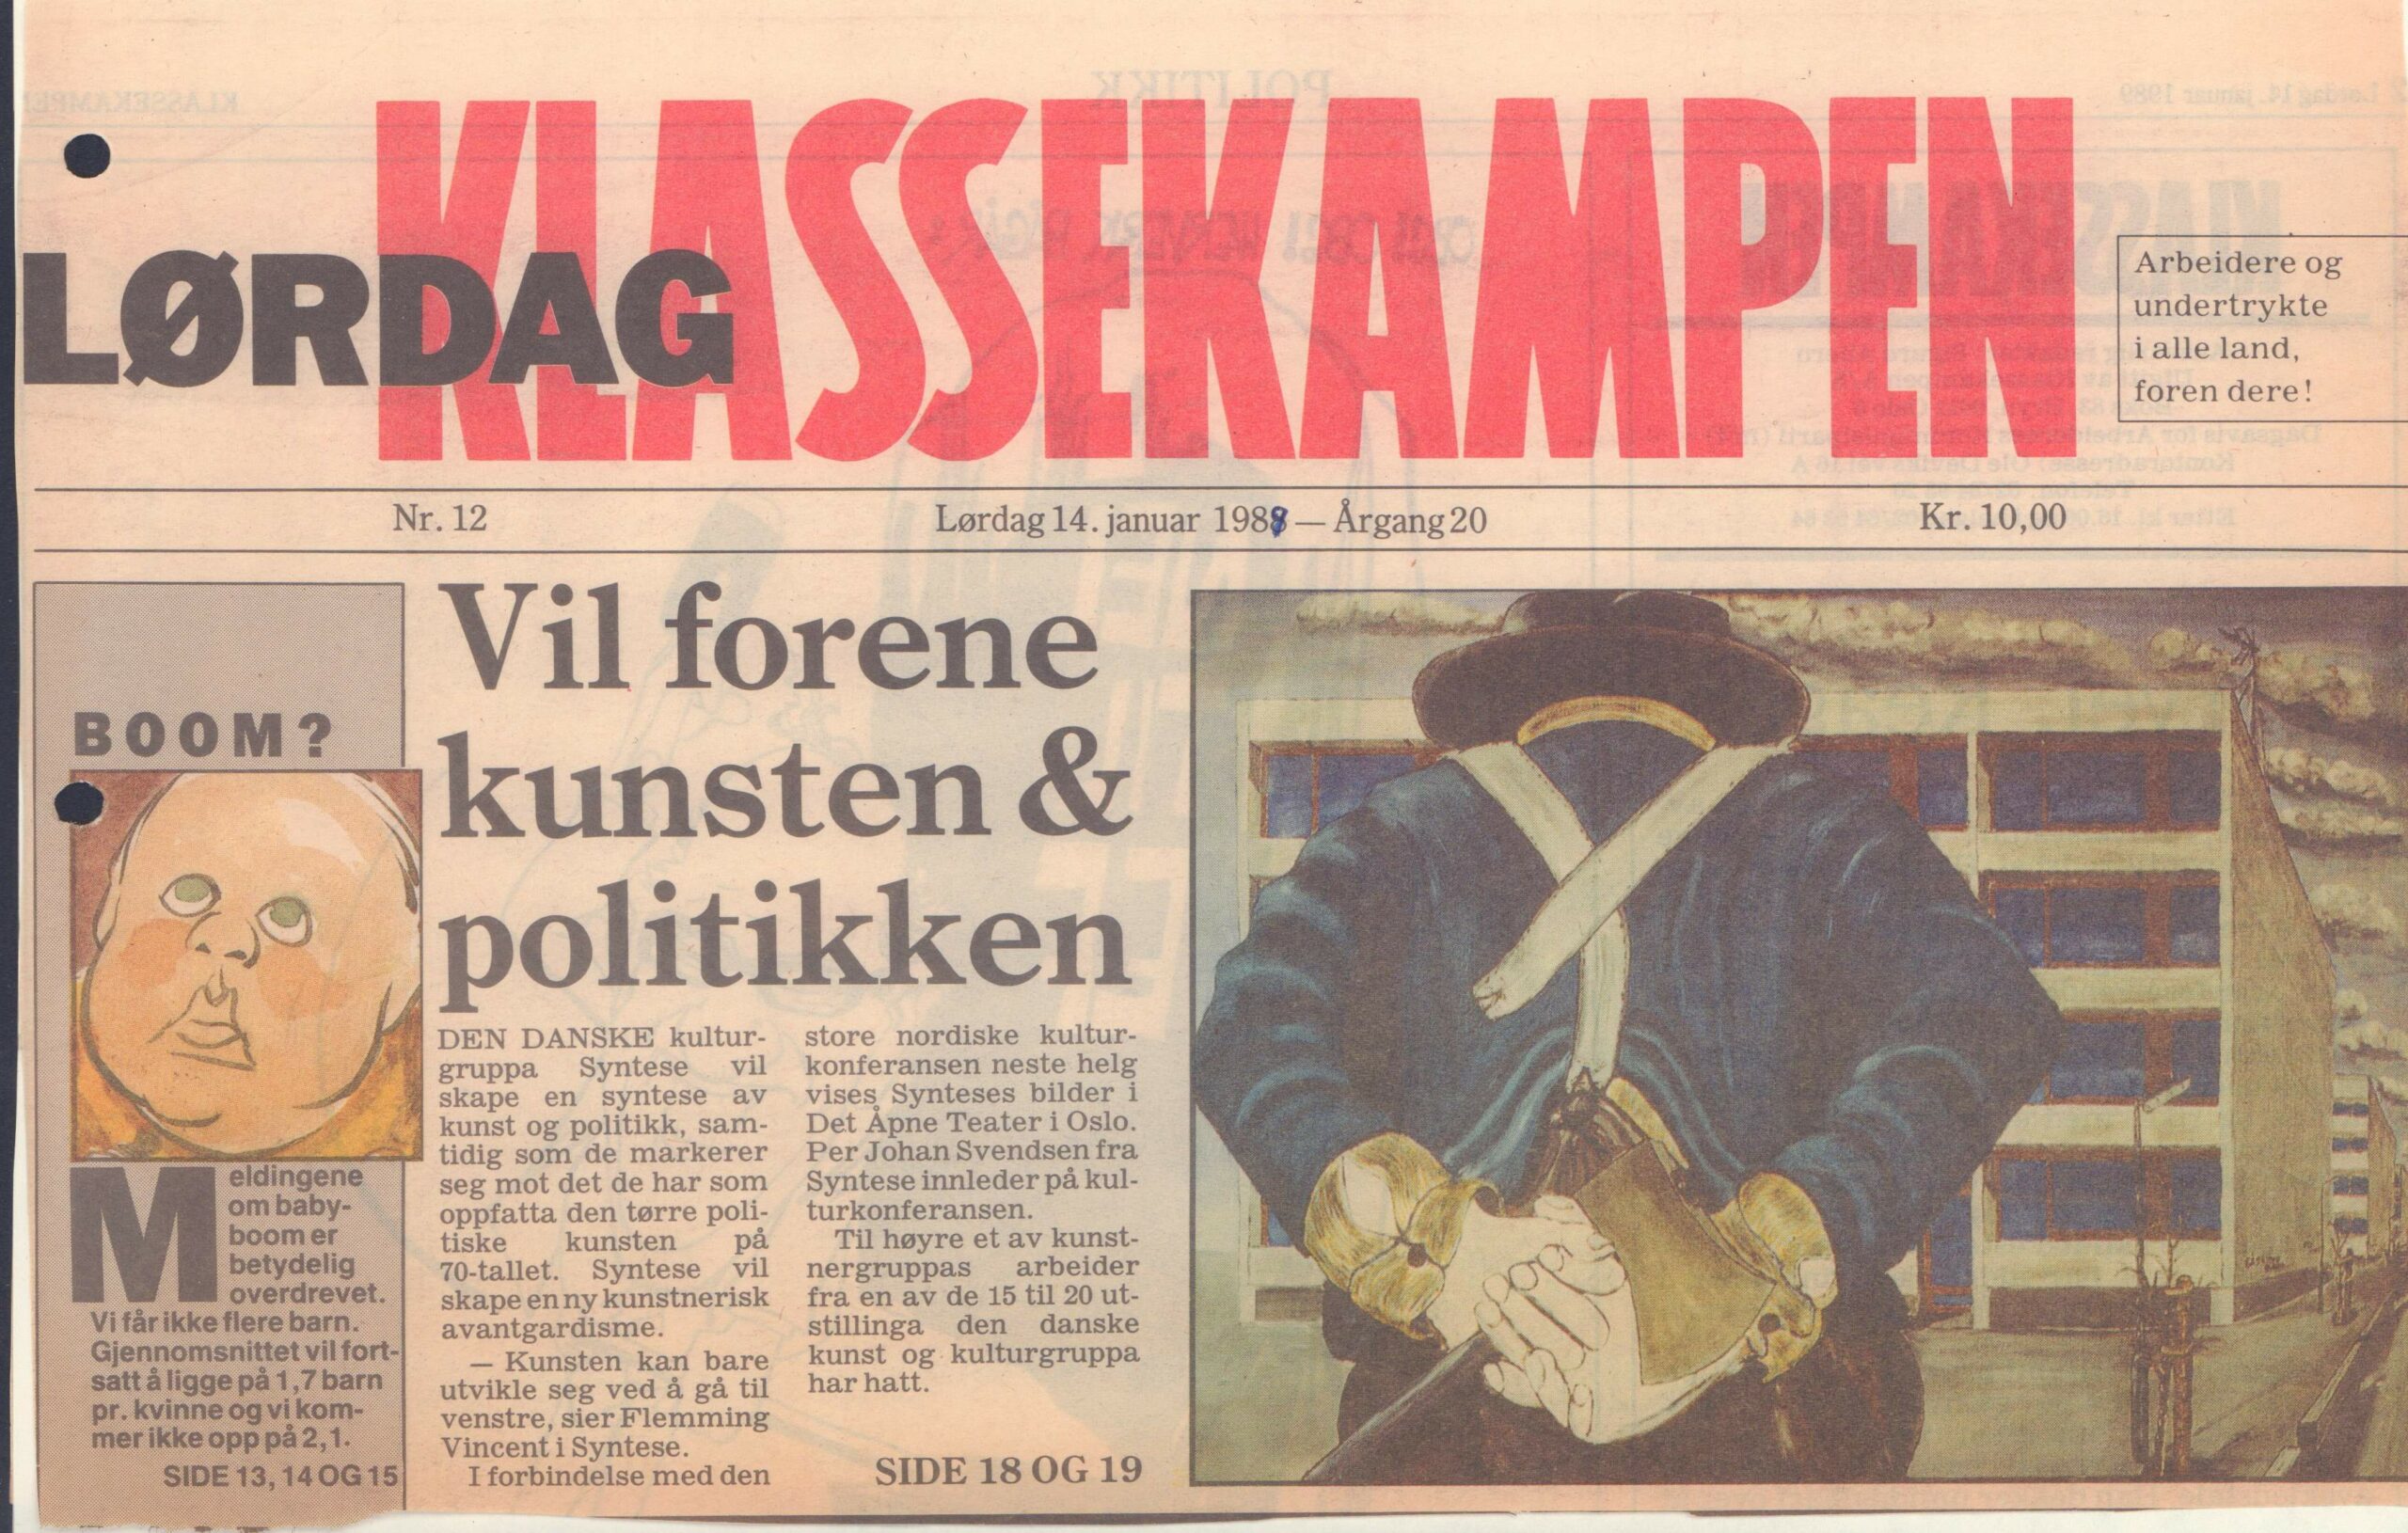 Vil forene kunsten og politikken. Omtale (Nordisk kulturkonference. Mot Strømmen 1989, Oslo). Klassekampen).